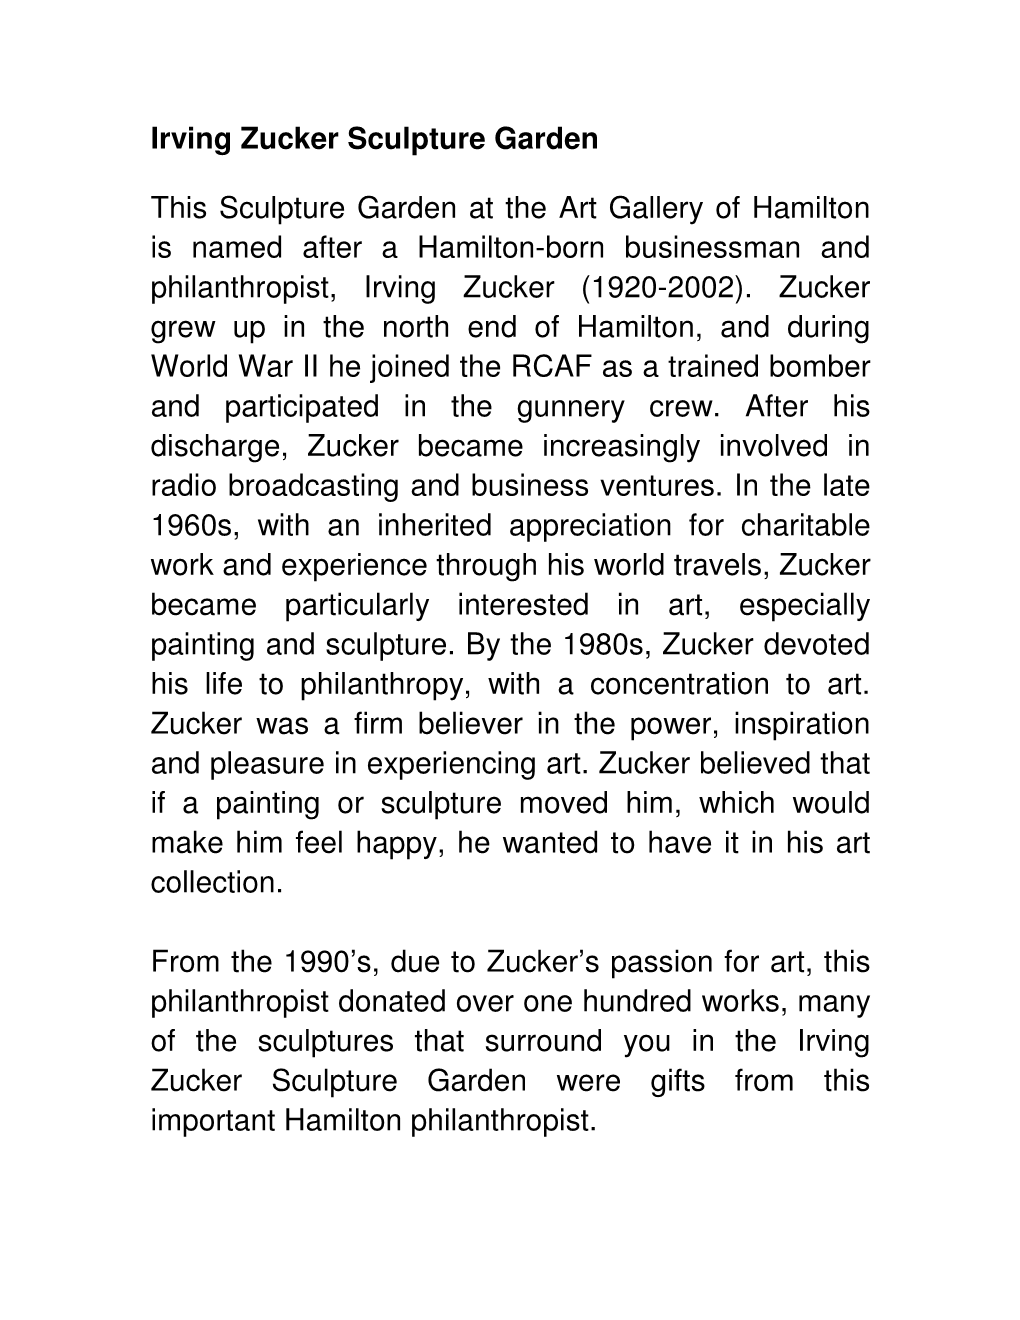 Irving Zucker Sculpture Garden